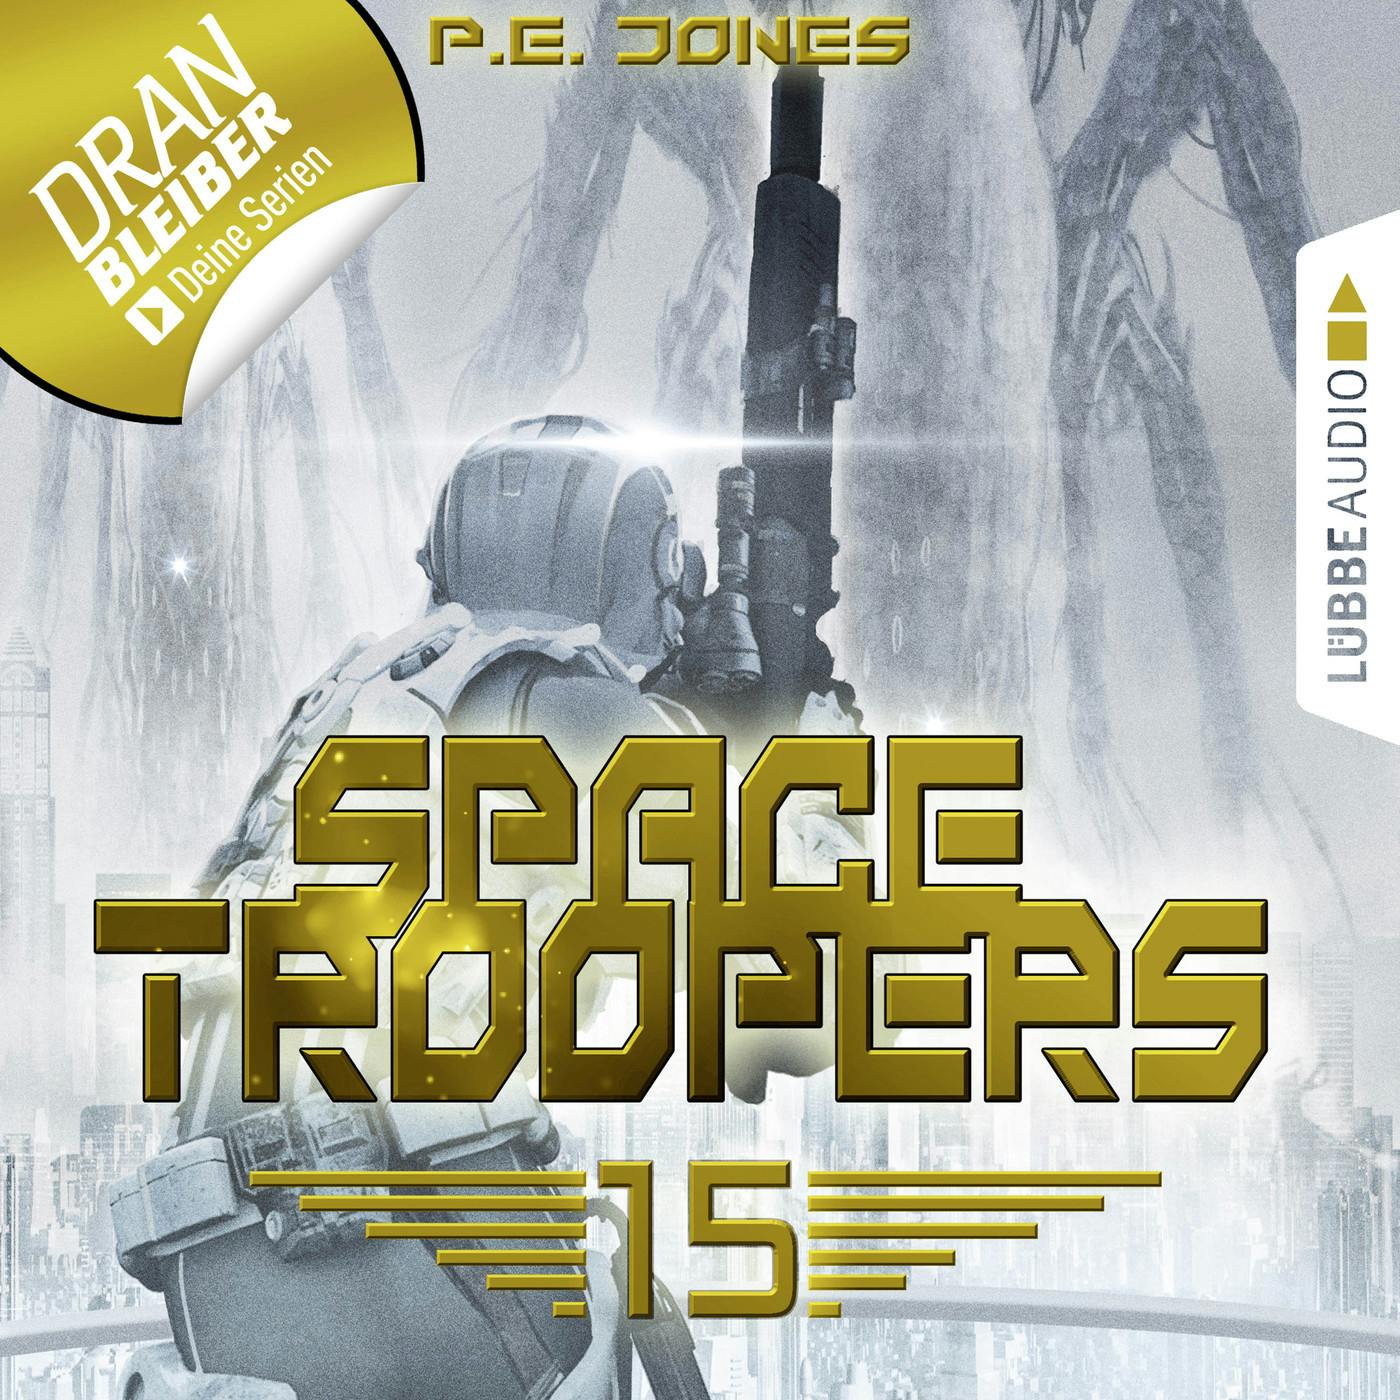 Space Troopers, Folge 15: Eiskalt - P. E. Jones